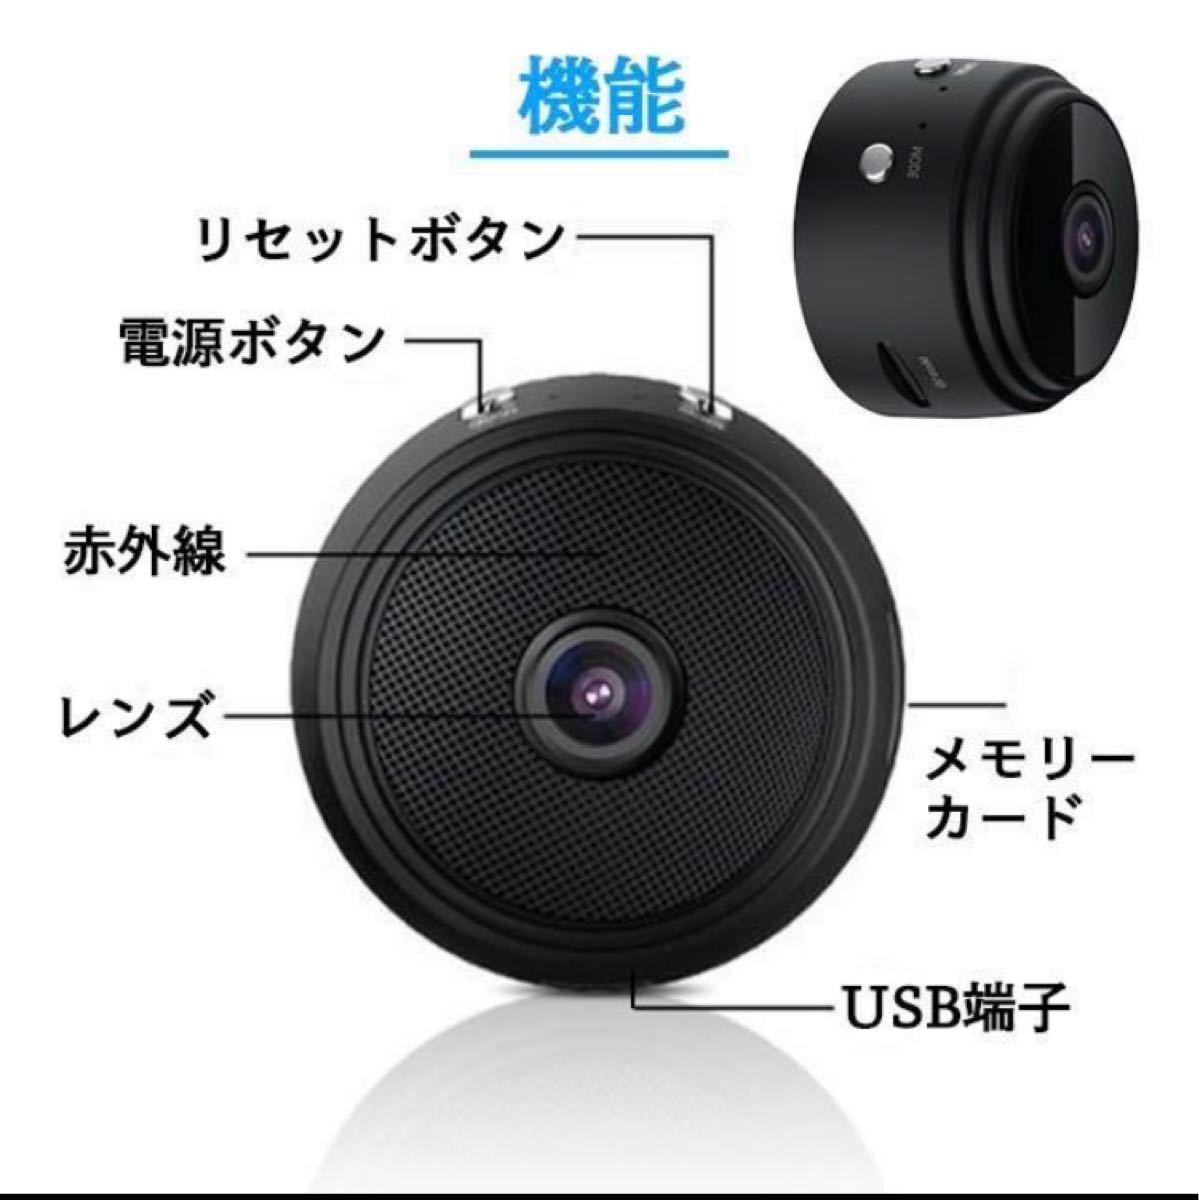 【2022最新版】超小型防犯カメラ 1080P長時間録画 遠隔操作O WiFi フルHD 防犯カメラ 監視カメラ 高画質